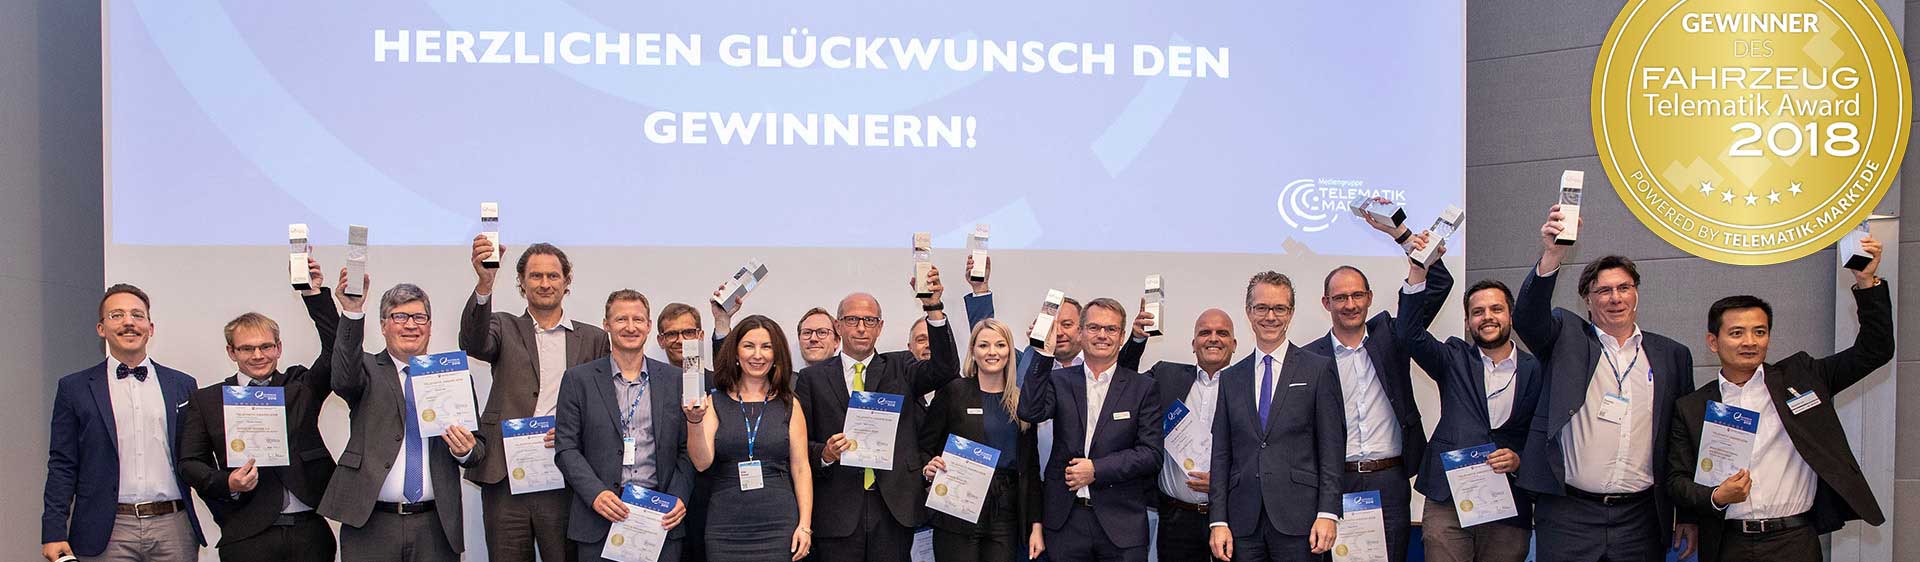 ICS Group Telematik Award 2018